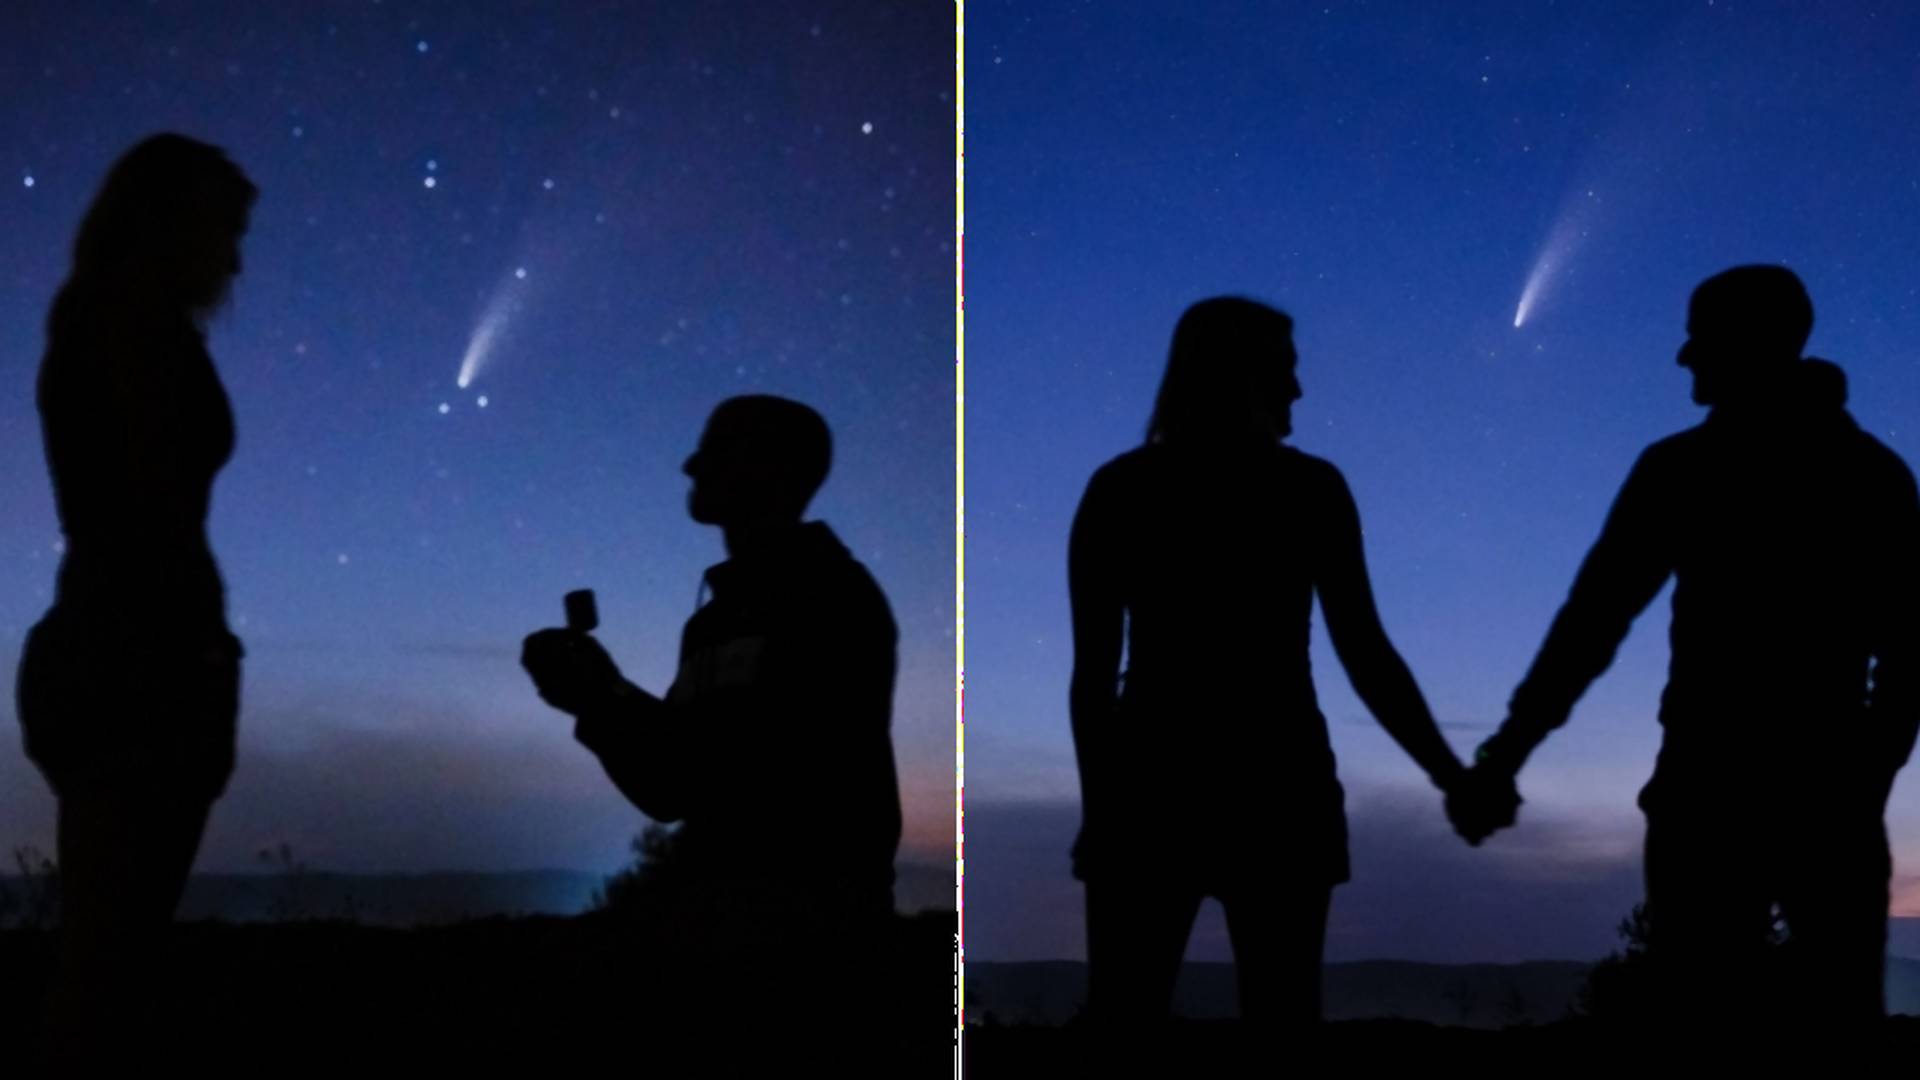 Muž originálne požidal priateľku o ruku: Preletela za nimi kométa, ktorú vidieť raz za tisícky rokov